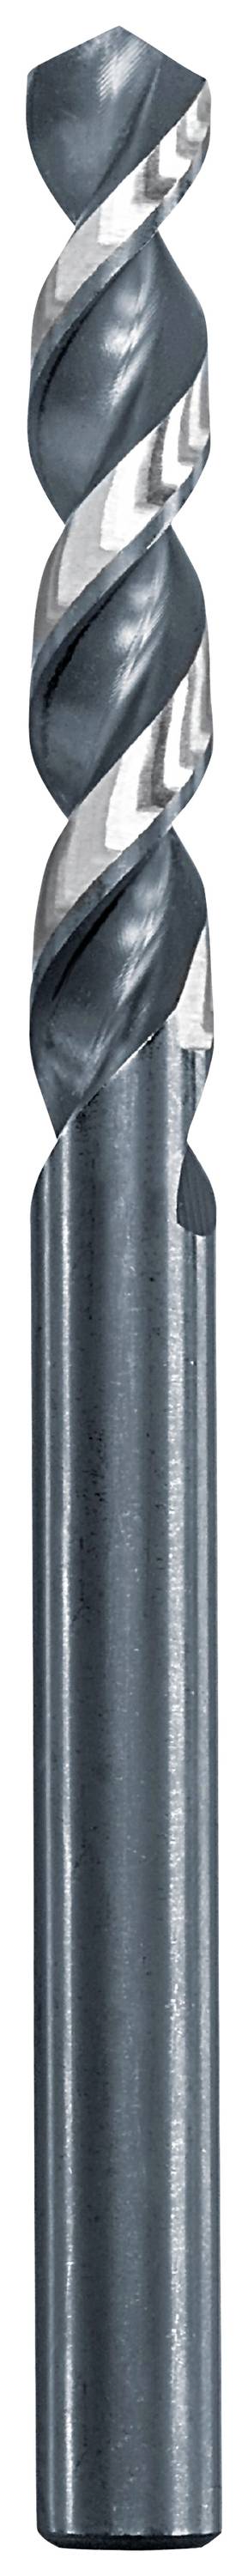 KWB 258650 Metall-Spiralbohrer 5 mm Gesamtlänge 86 mm 1 St.